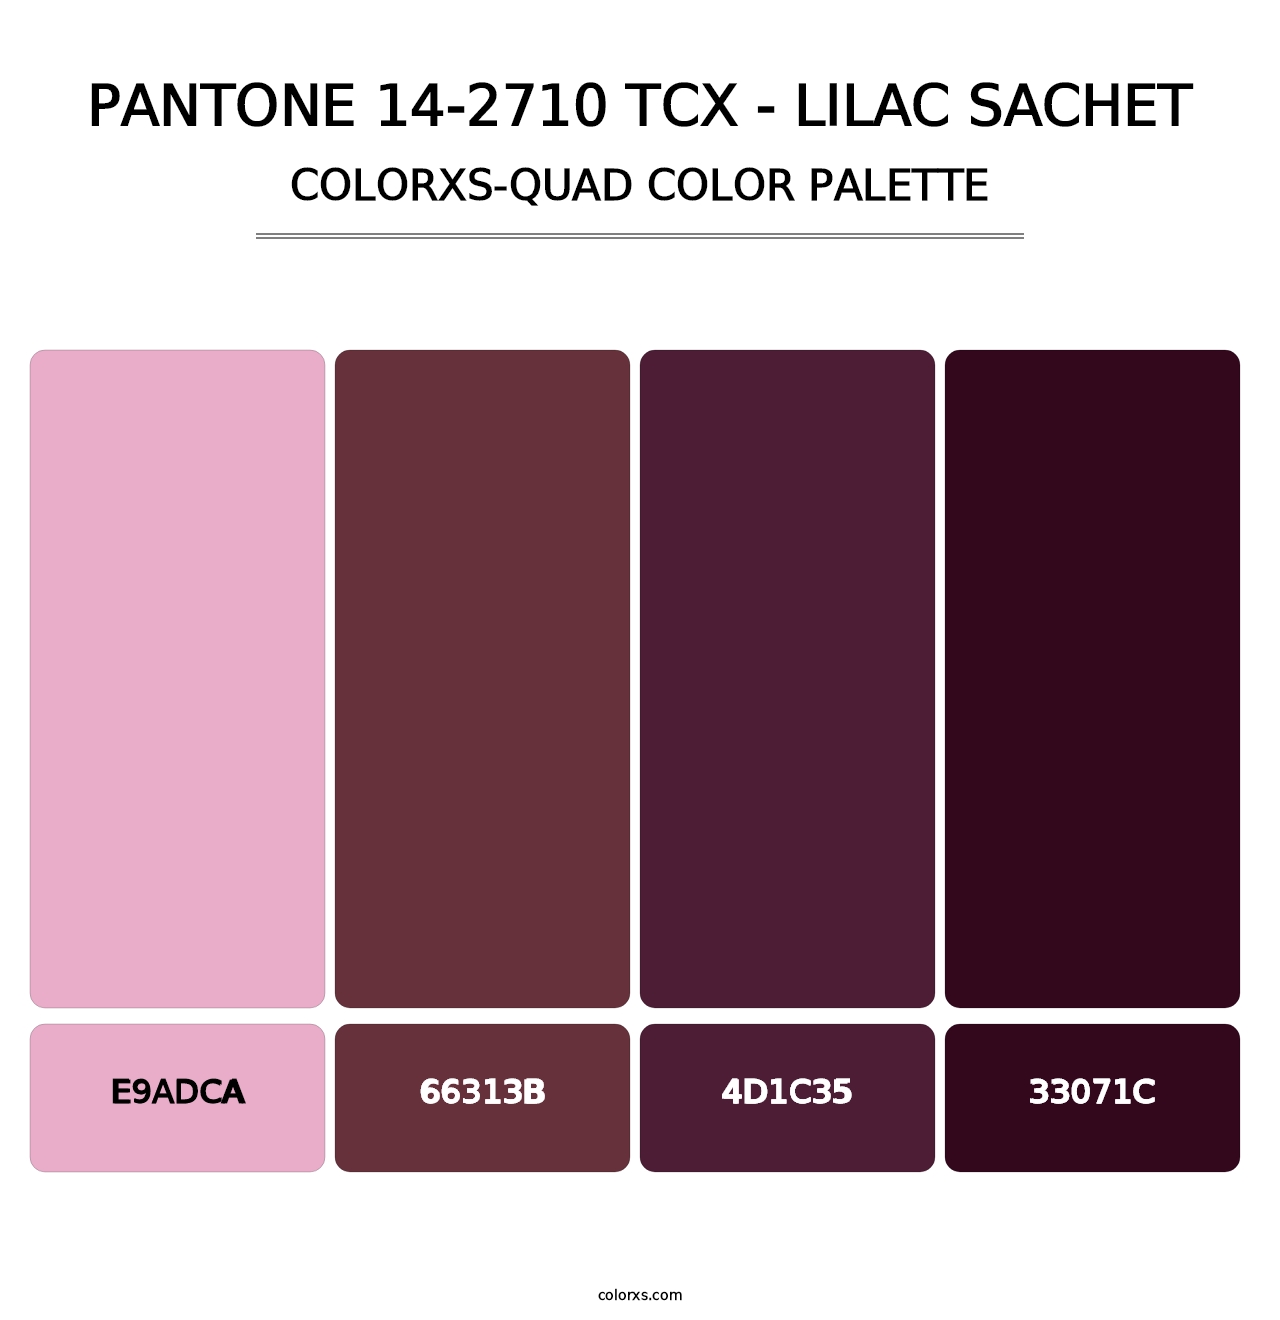 PANTONE 14-2710 TCX - Lilac Sachet - Colorxs Quad Palette